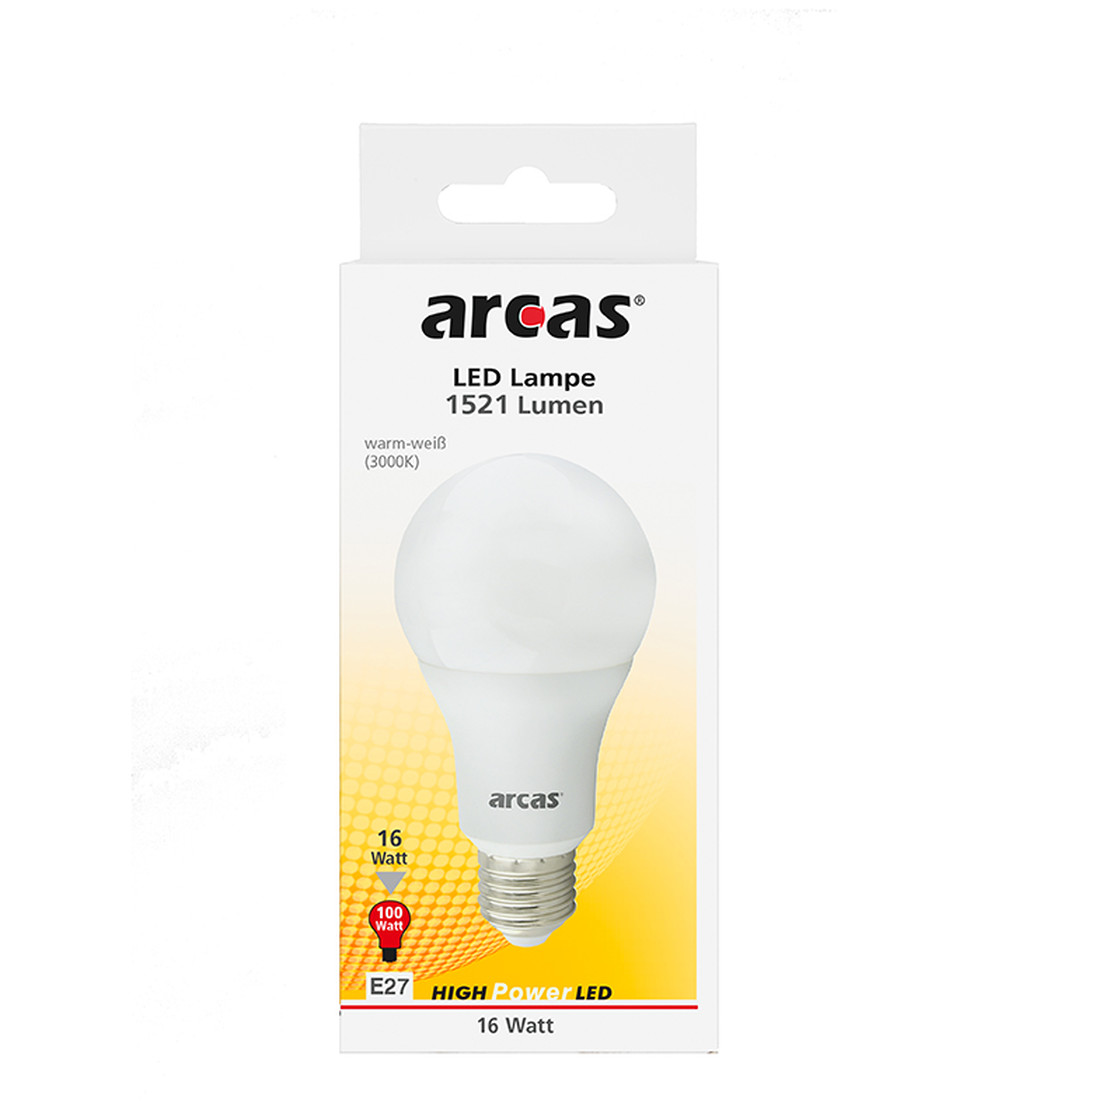 Arcas E27 LED Lampe Birne 16W 3000K 1521 Lumen Warmweiss